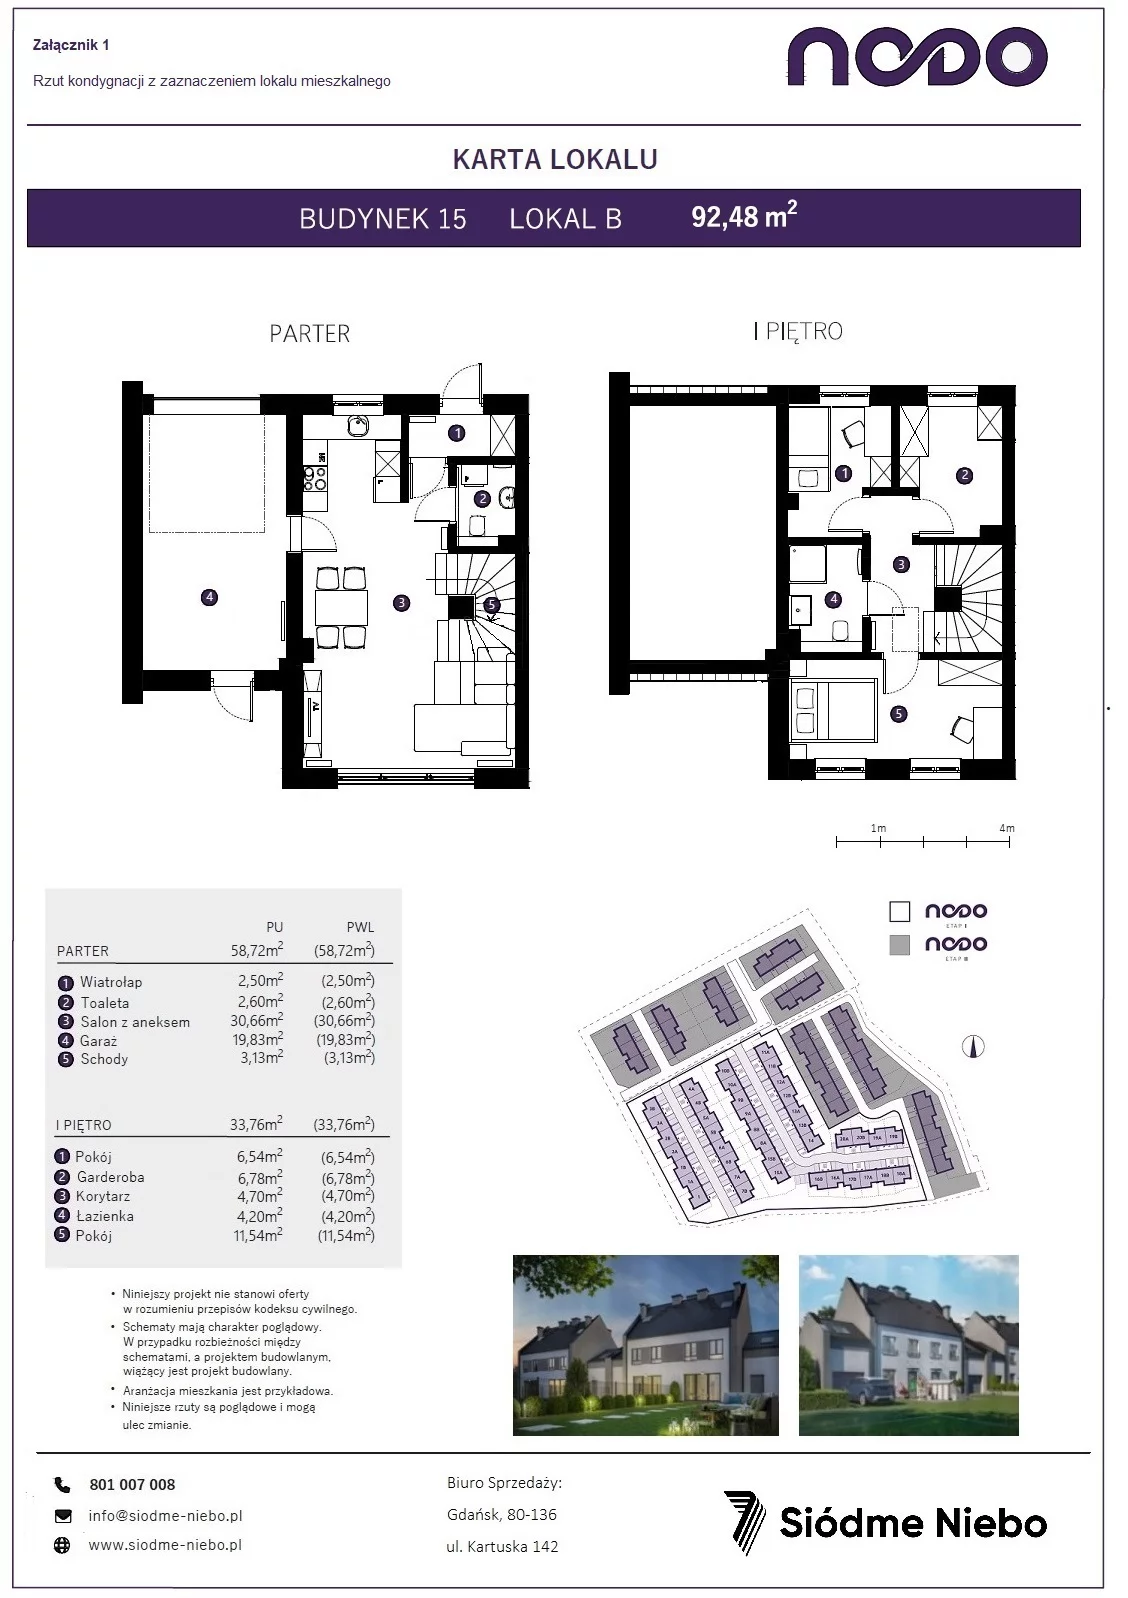 Mieszkanie 92,48 m², parter, oferta nr 15B, Osiedle Nodo, Gdańsk, Jasień, ul. Lubowidzka